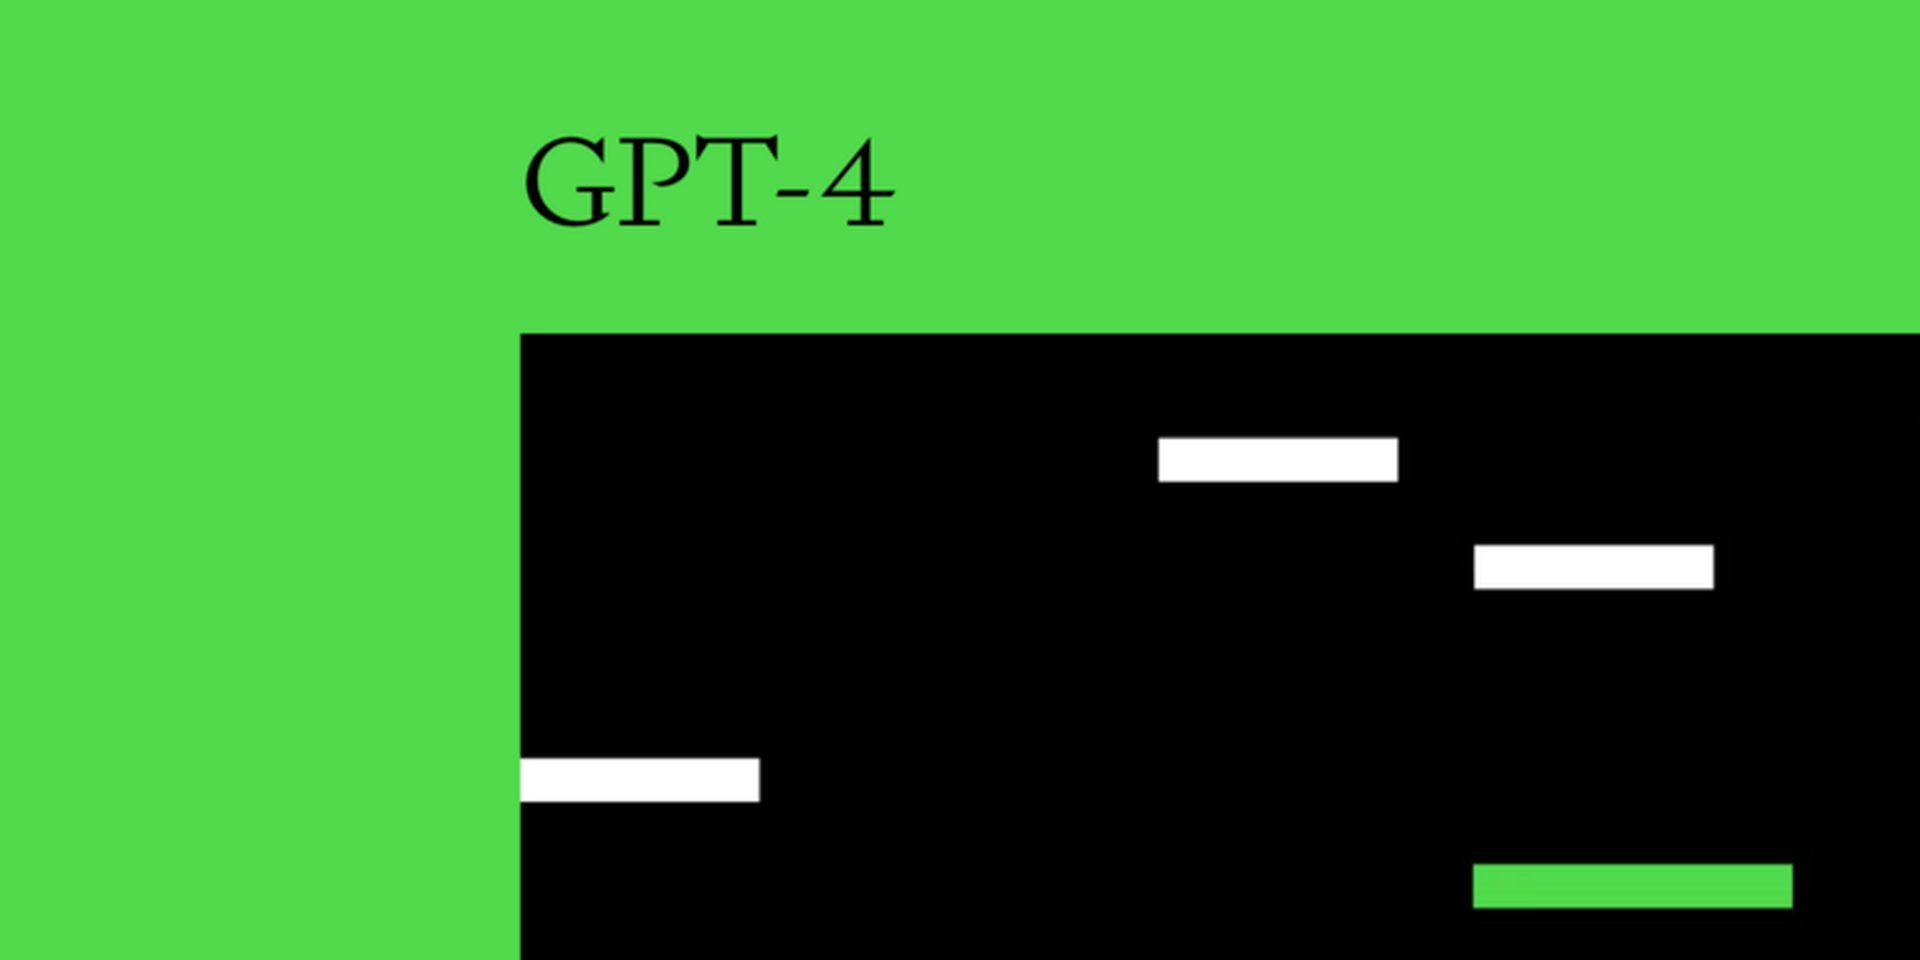 Comment rejoindre la liste d'attente de l'API GPT-4 ?